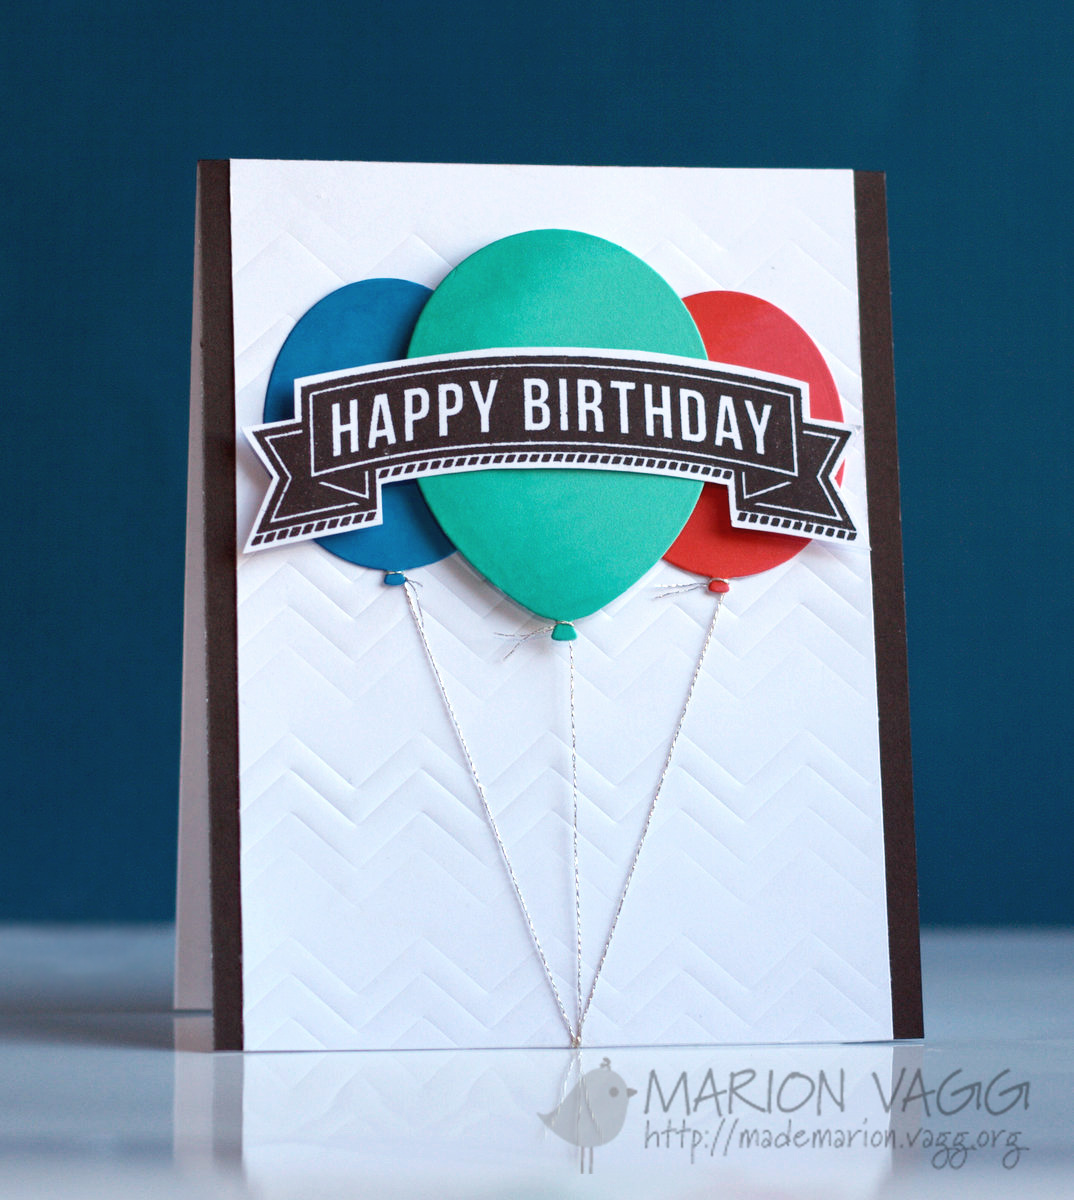 Happy Birthday | Marion Vagg